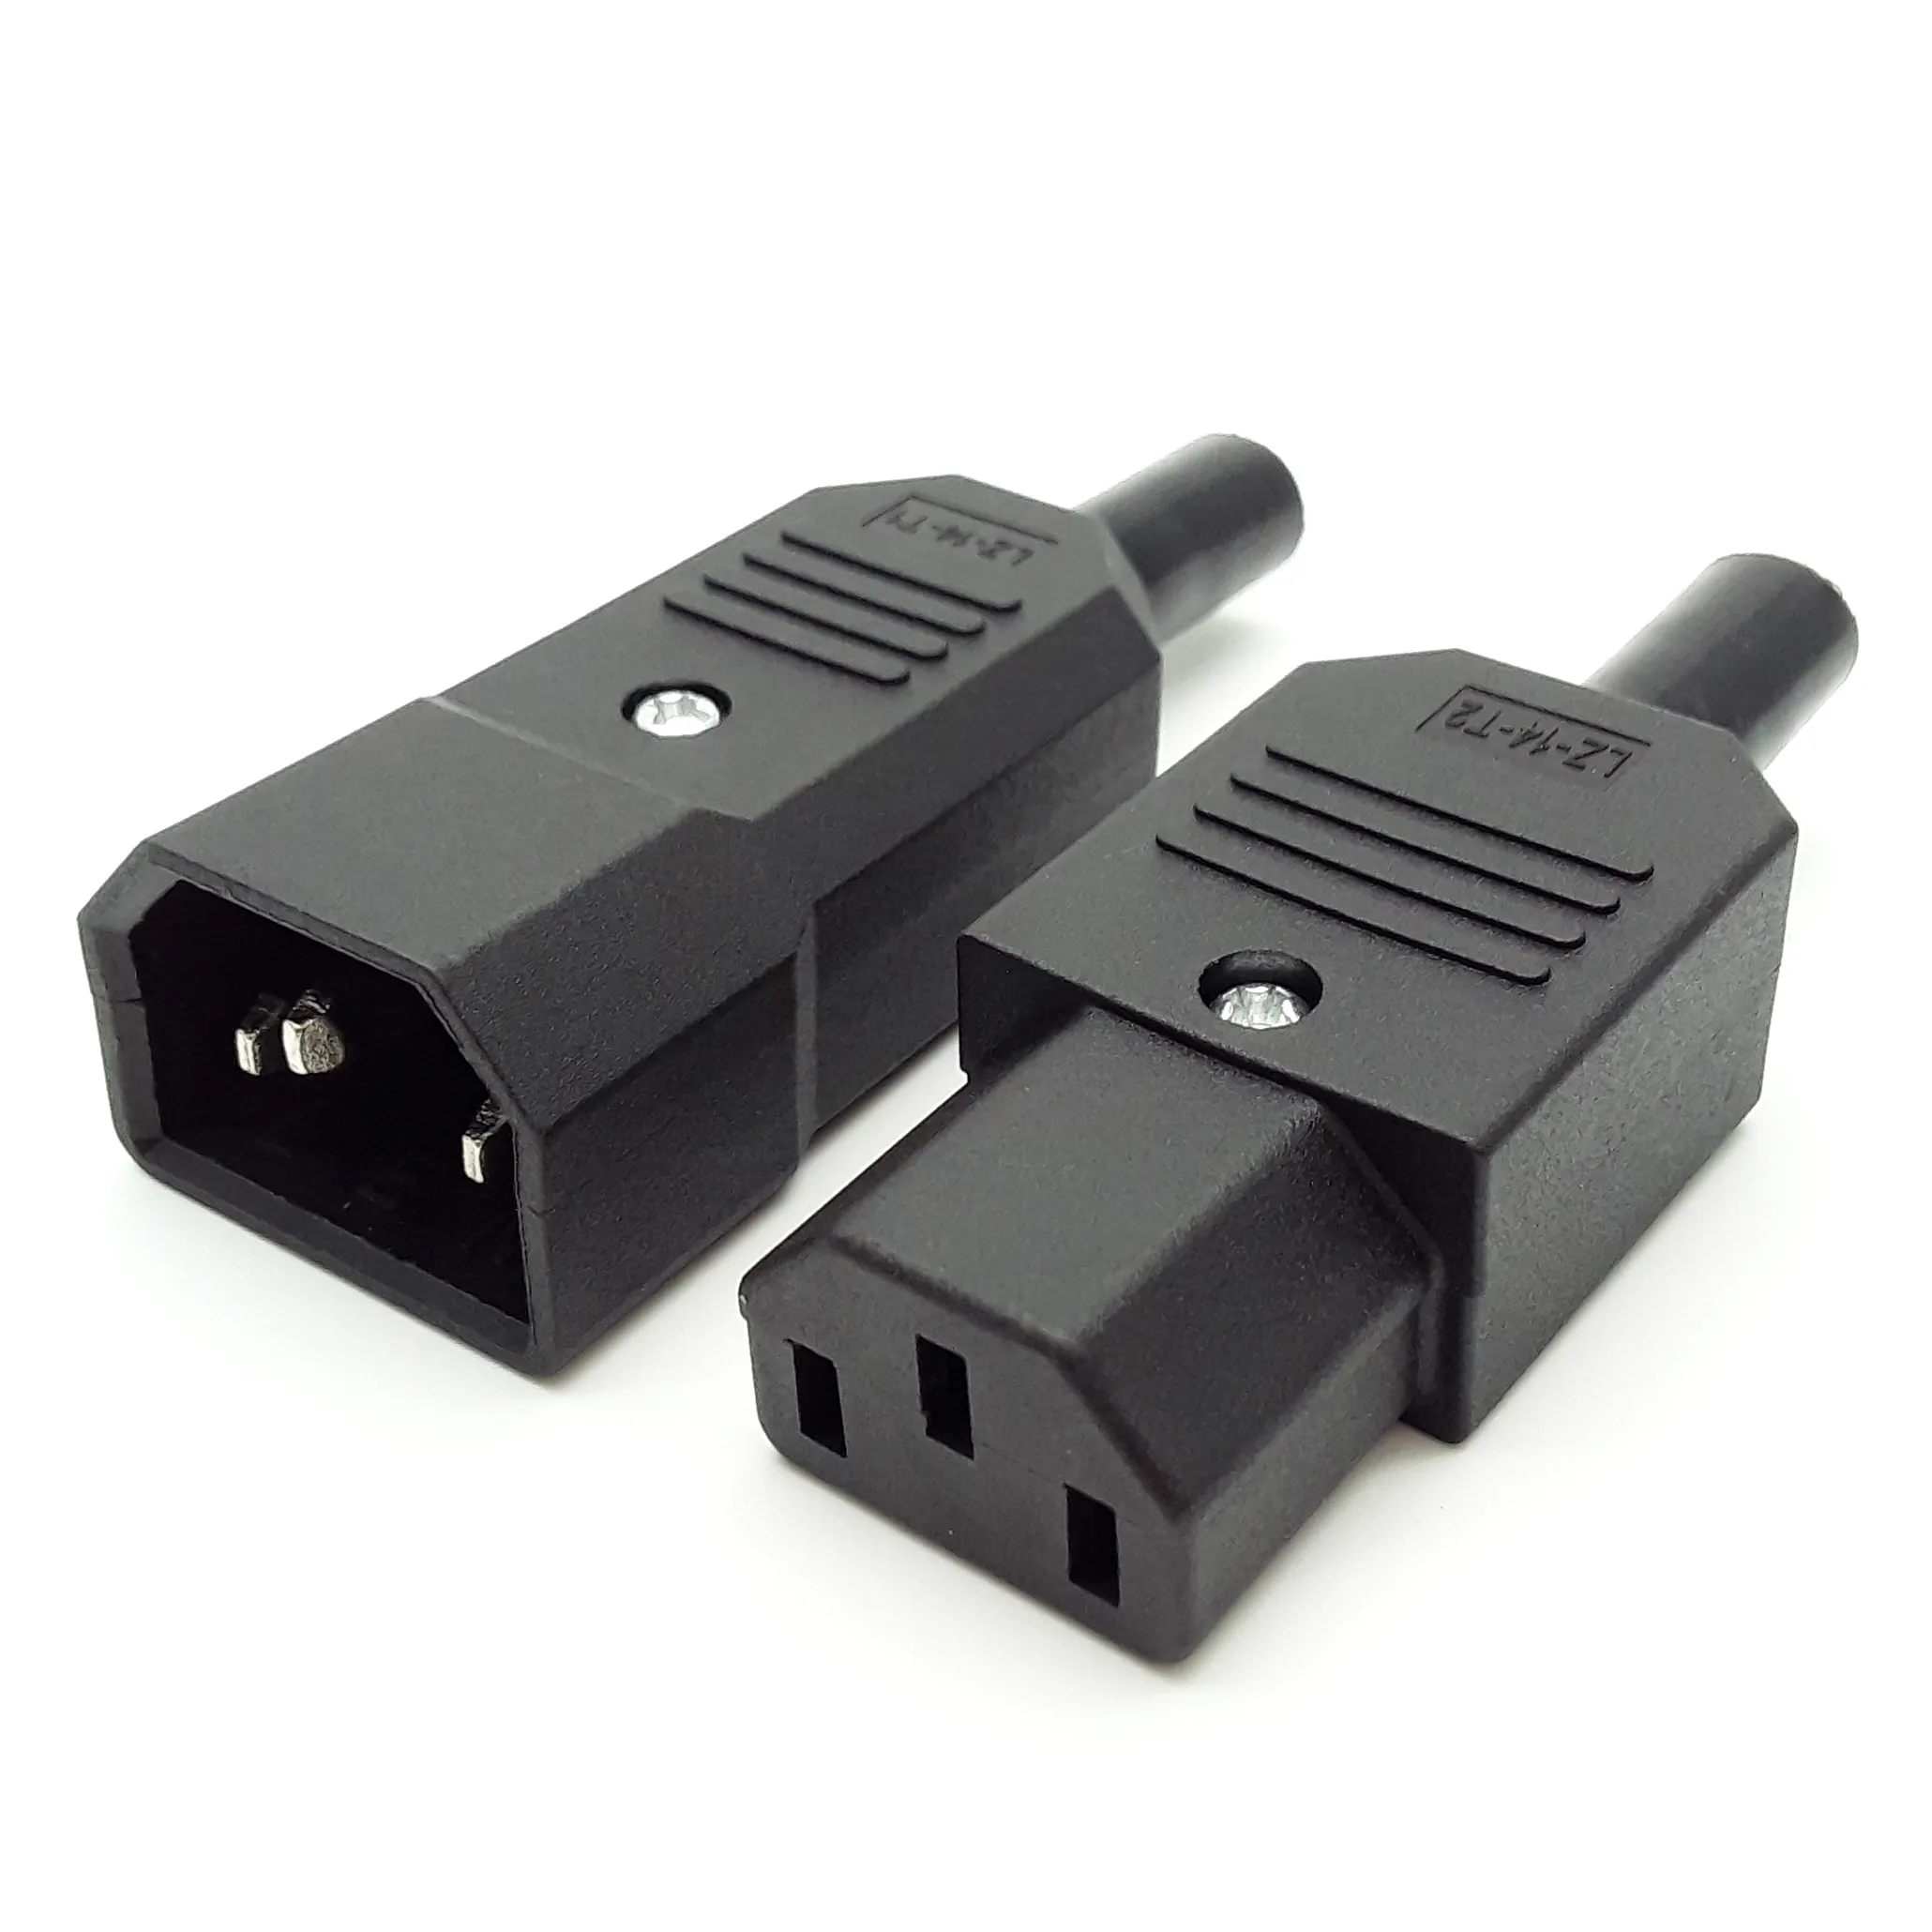 Conectores do cabo de alimentação do sexo masculino e feminino C13 e C14 fio elétrico terminal de conector de alimentação da bateria